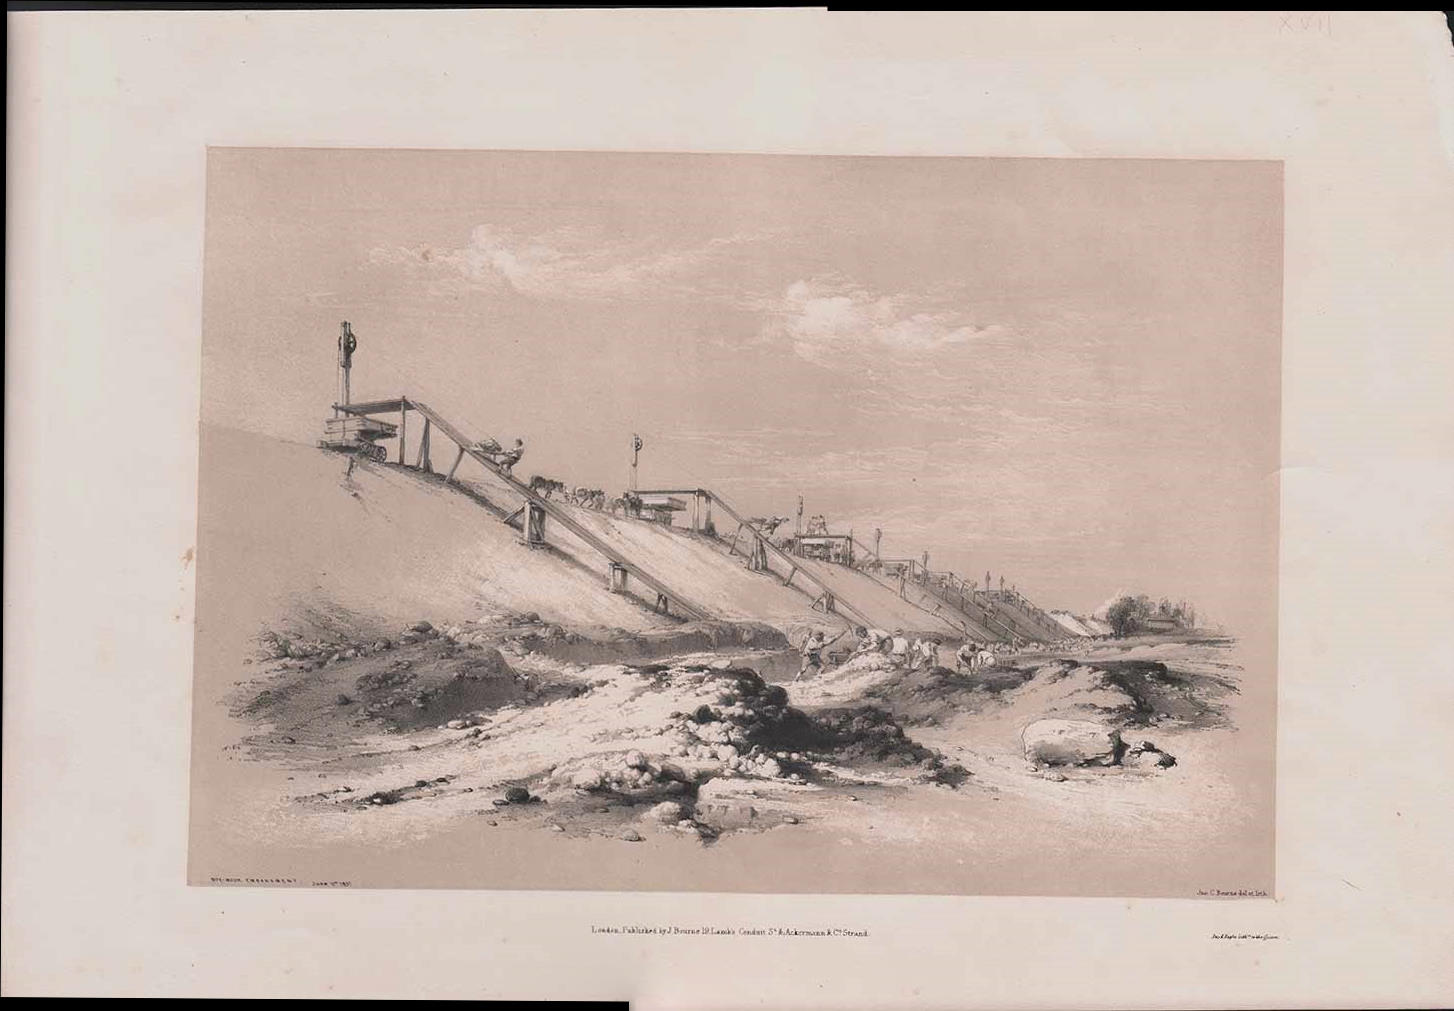 ‘Box-Moor Embankment, June 11th 1837’